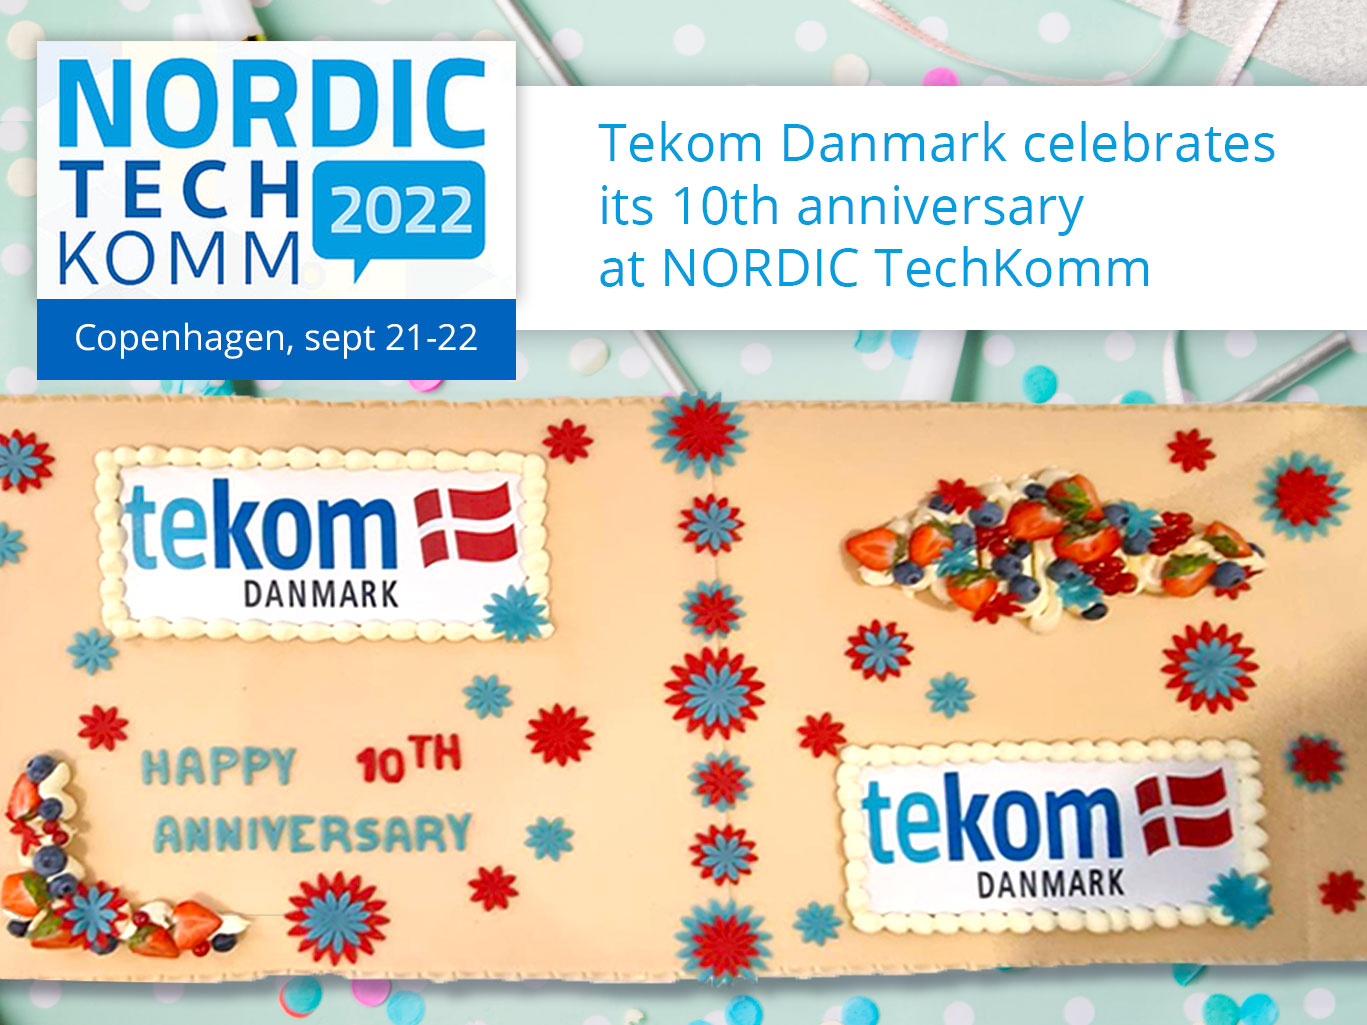 tekom danmark's birthday cake 10th anniversary